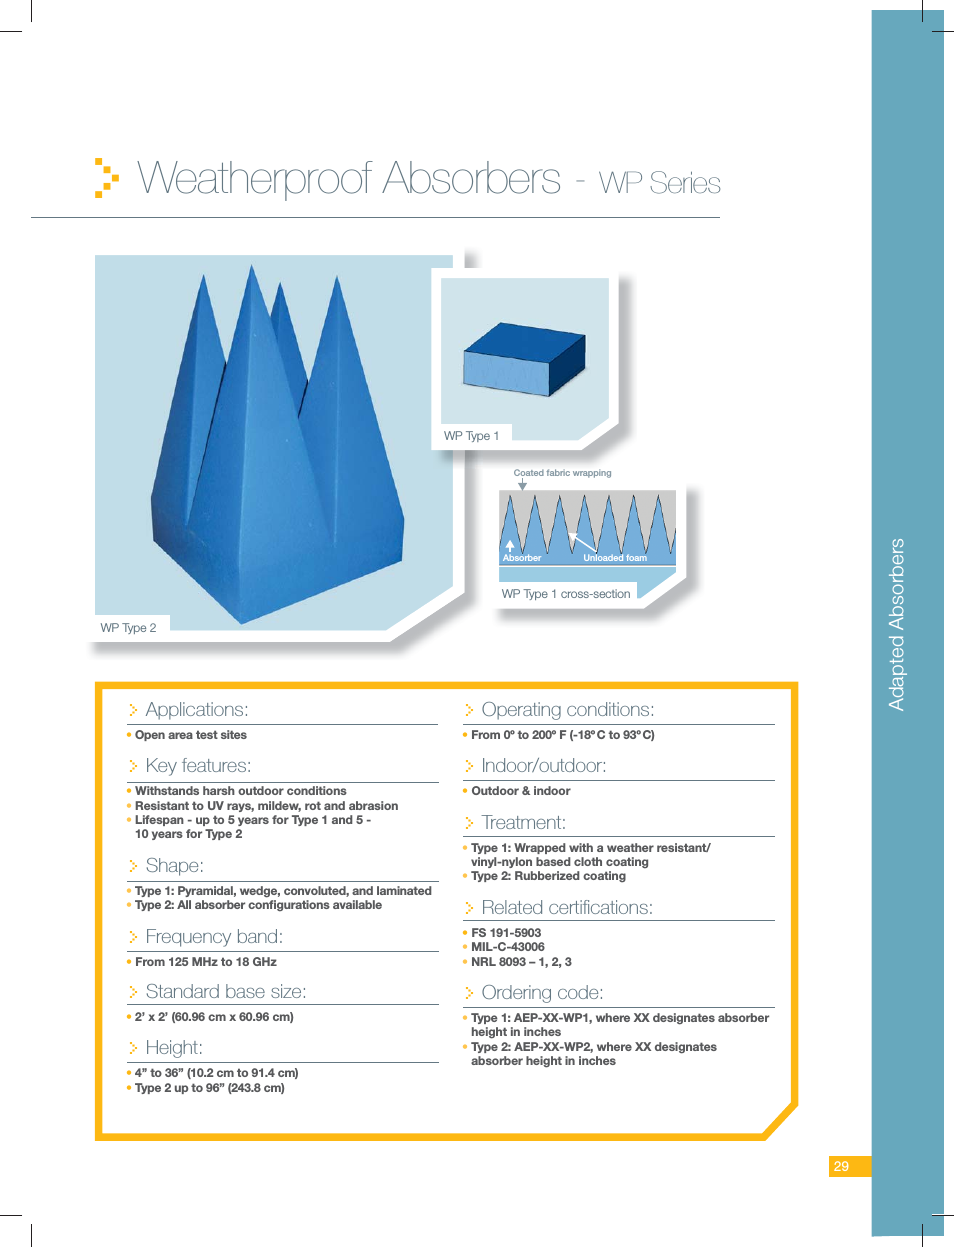 Weatherproof Absorbers - WP Series